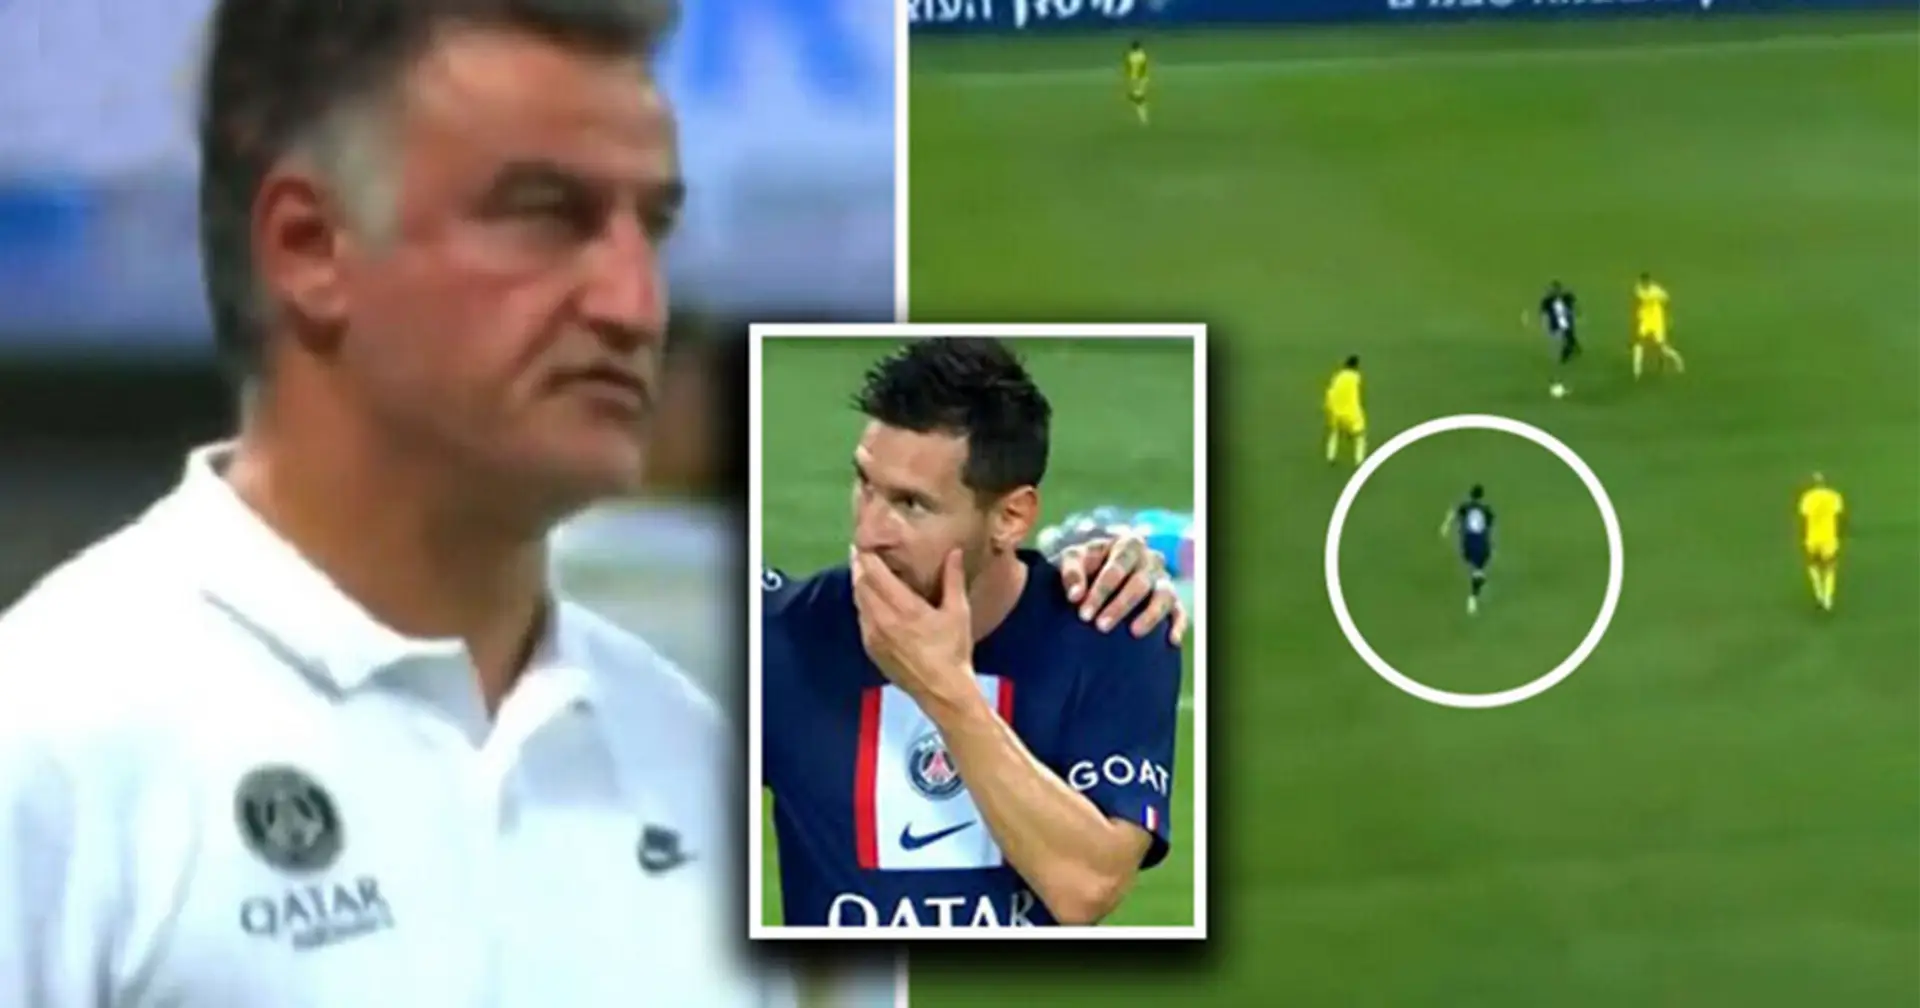 Le nouveau coach du PSG crie trois fois à Messi pour l'exhorter de presser sur l'adversaire - que s'est-il passé ensuite